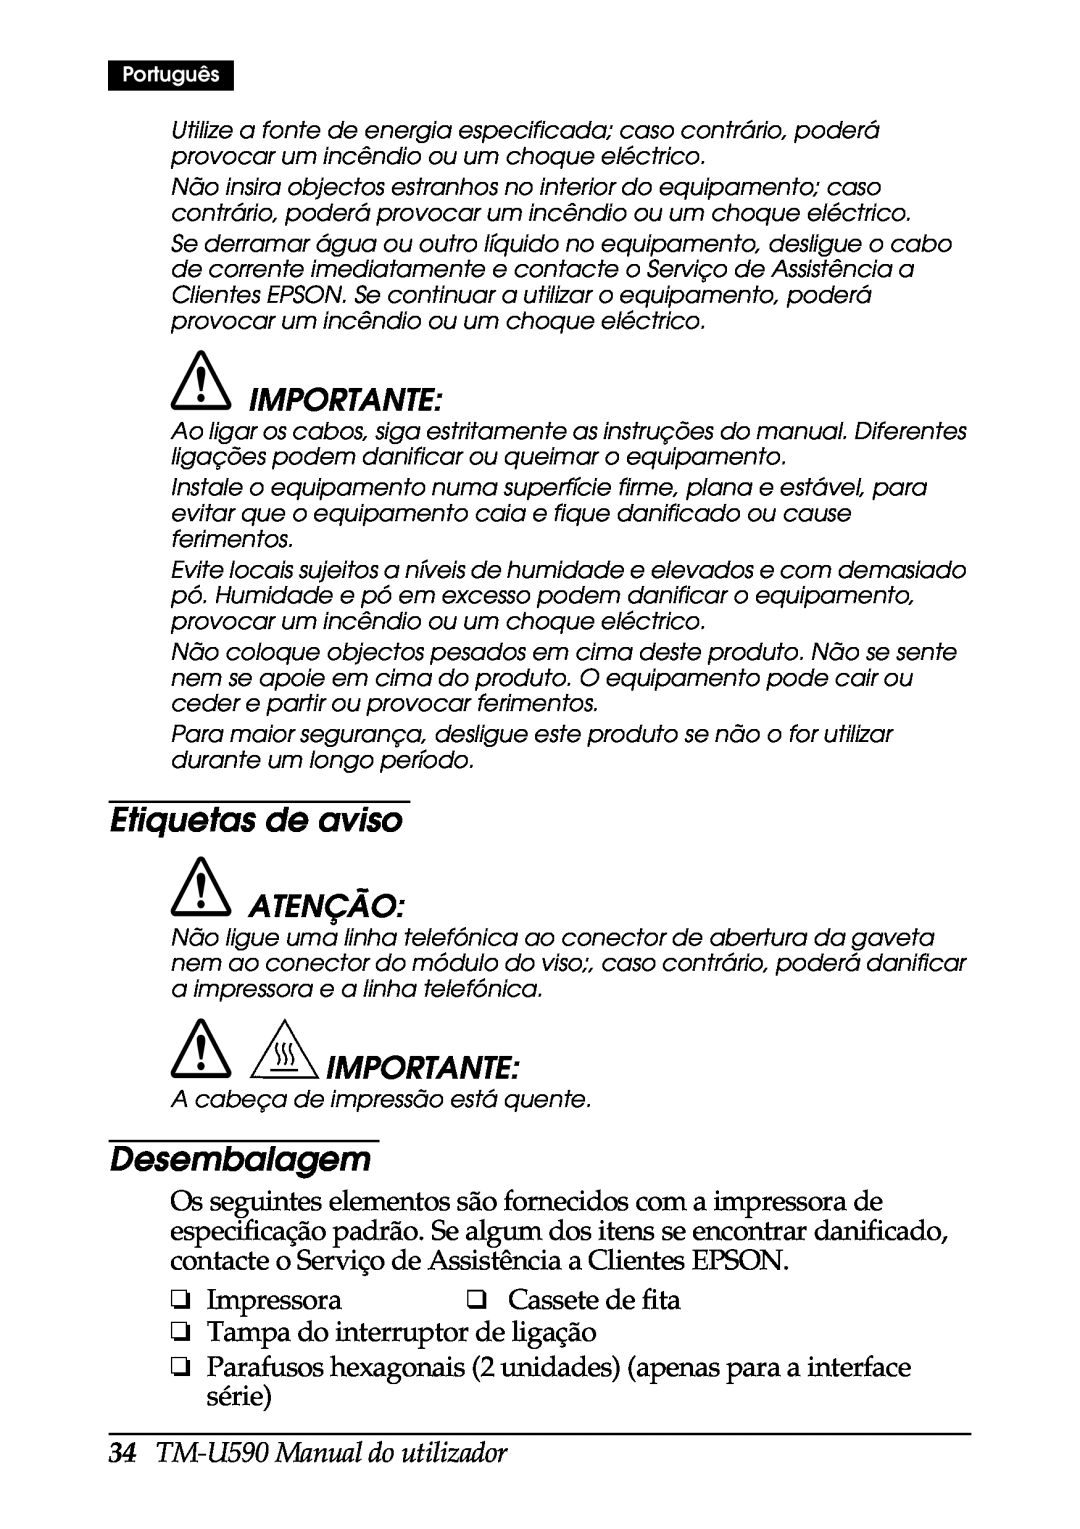 FARGO electronic user manual Etiquetas de aviso, Desembalagem, Importante, TM-U590 Manual do utilizador, Atenção 